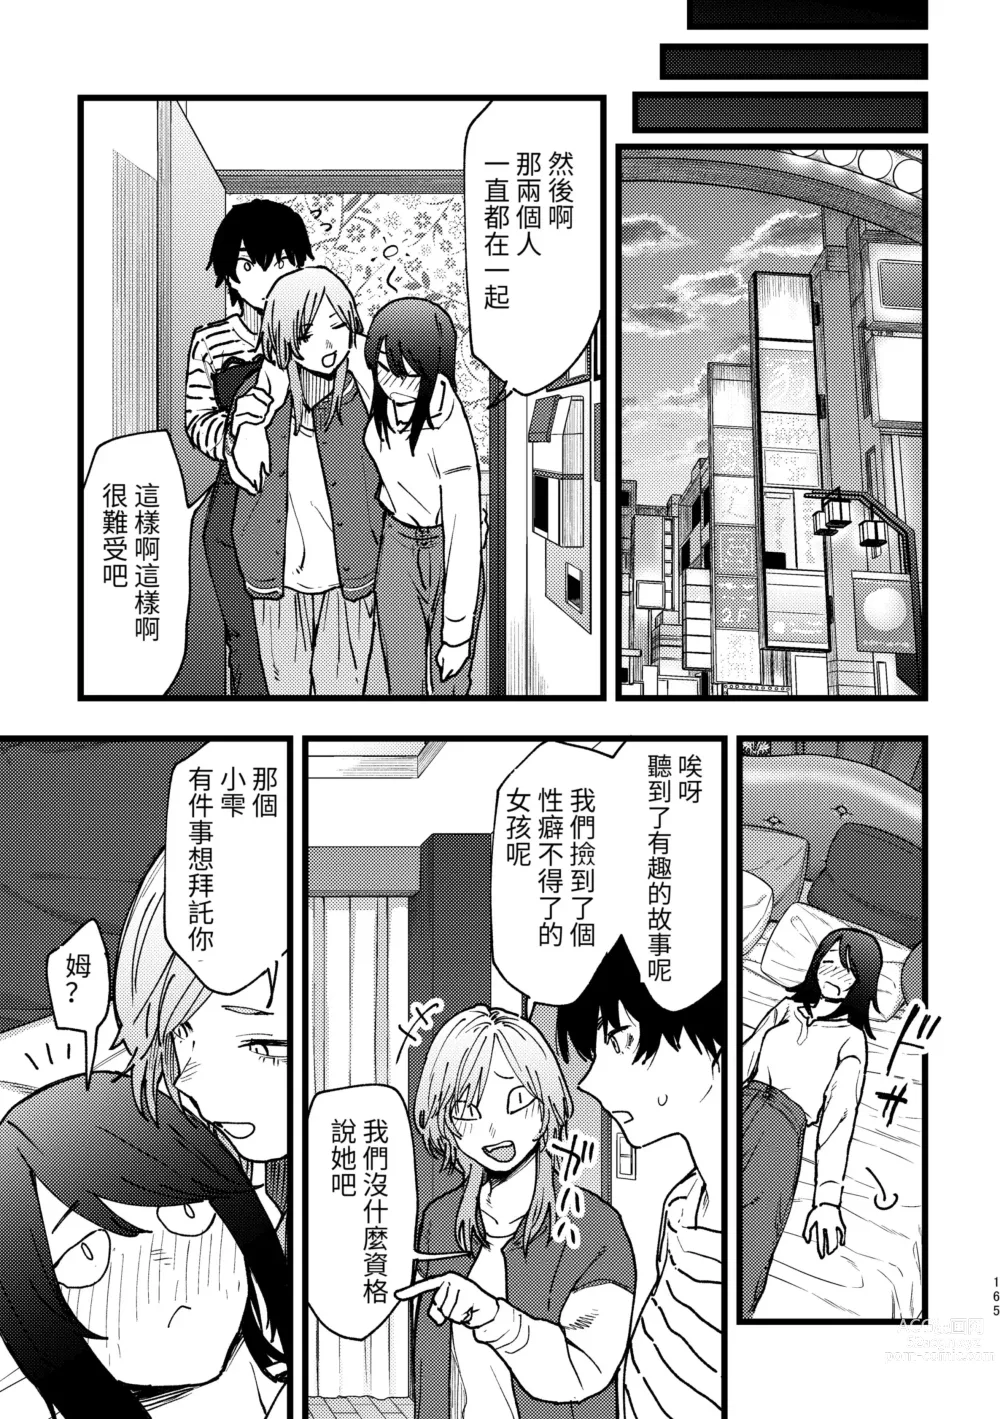 Page 7 of manga Hasamaru Onna